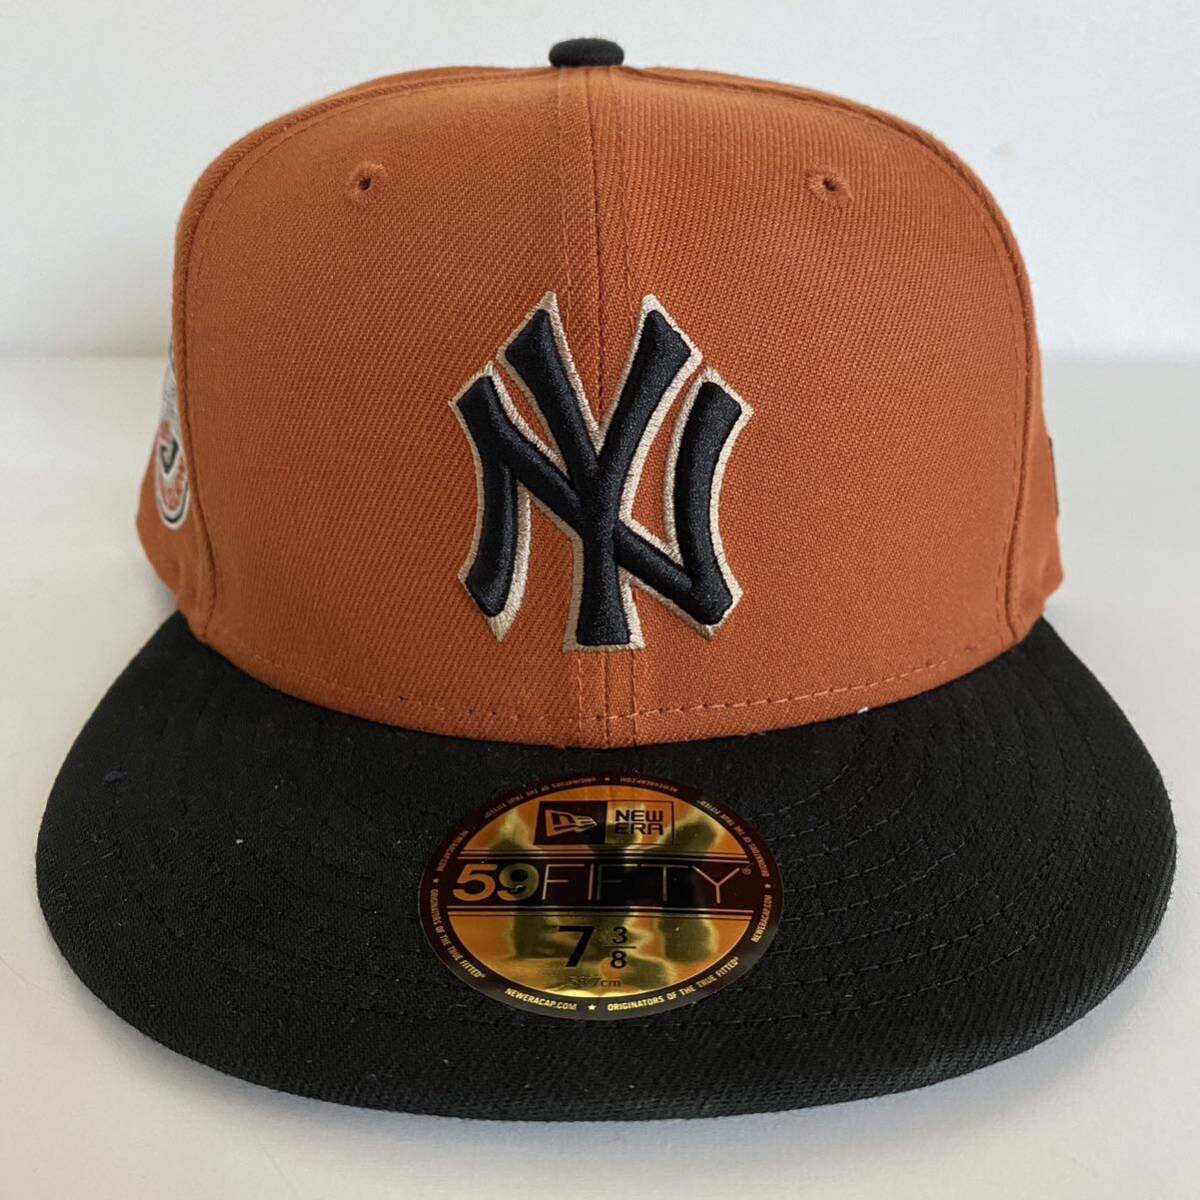 新品 New Era ツバ裏グレー NY Yankees 2Tone Burnt Orange Black Cap 7 3/8 58.7cm ニューエラ ヤンキース 2トーン オレンジ キャップ_画像3